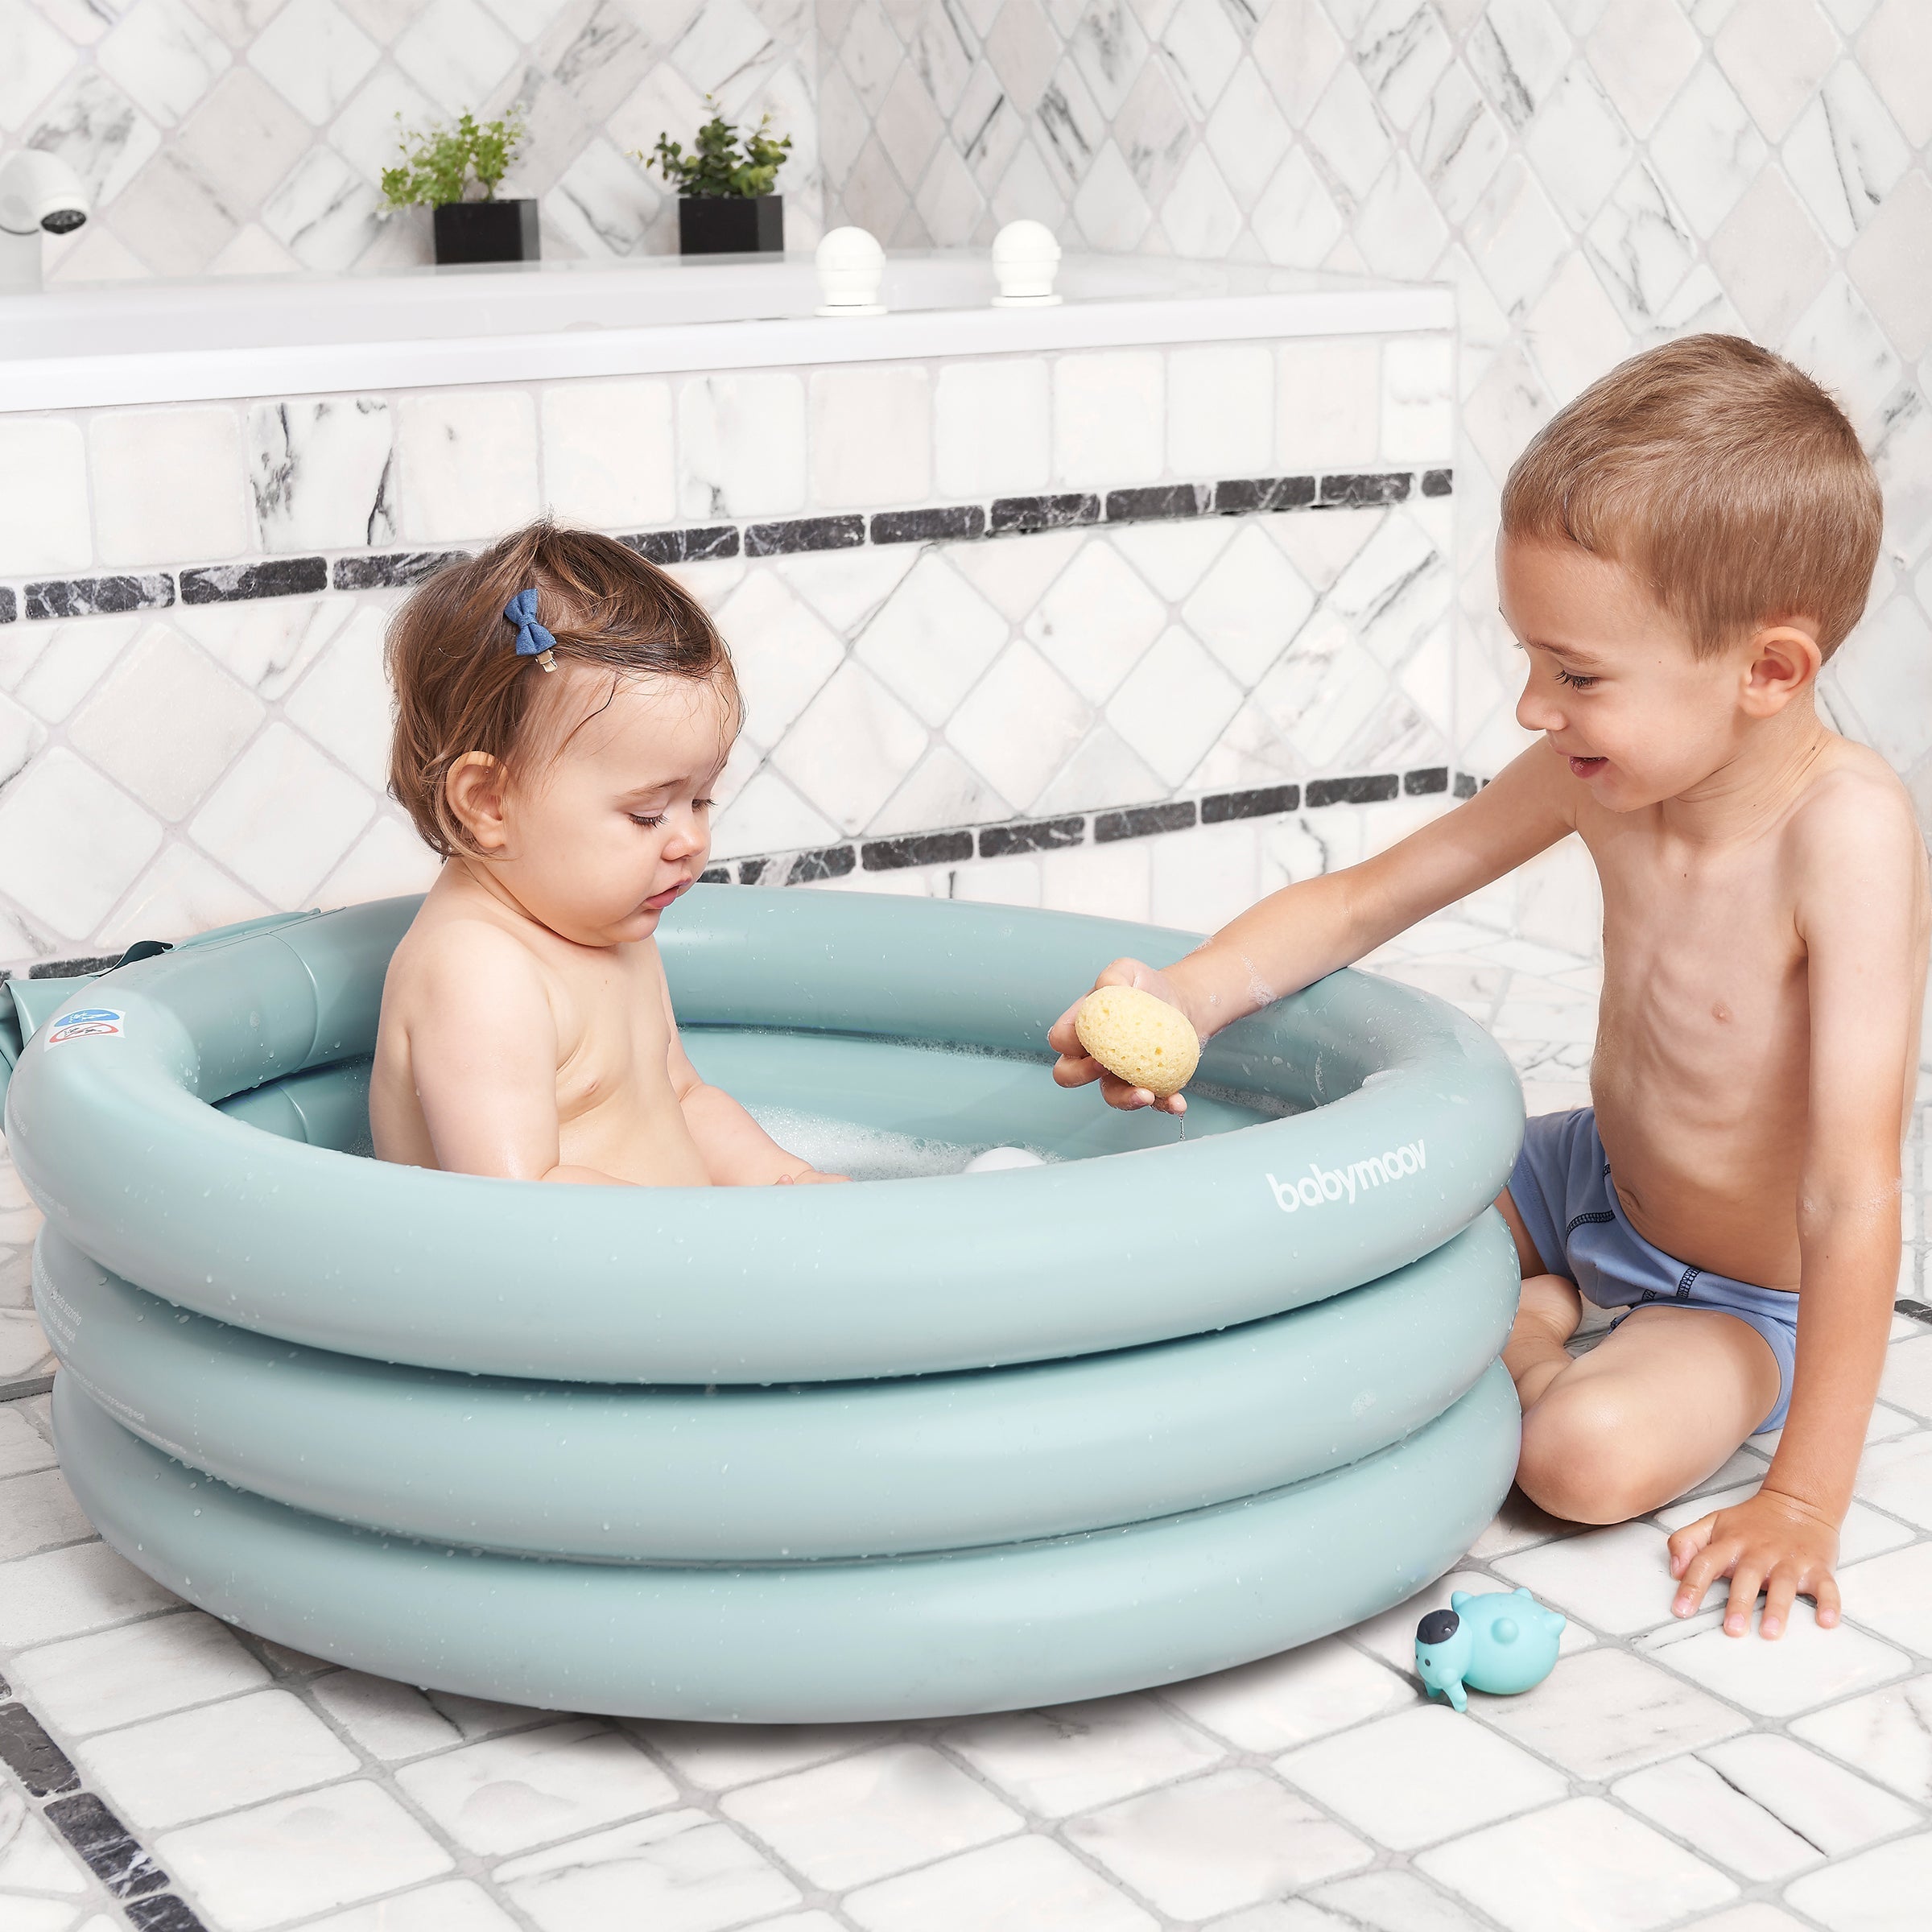 Quelle baignoire pour bébé ? – Chewbidou